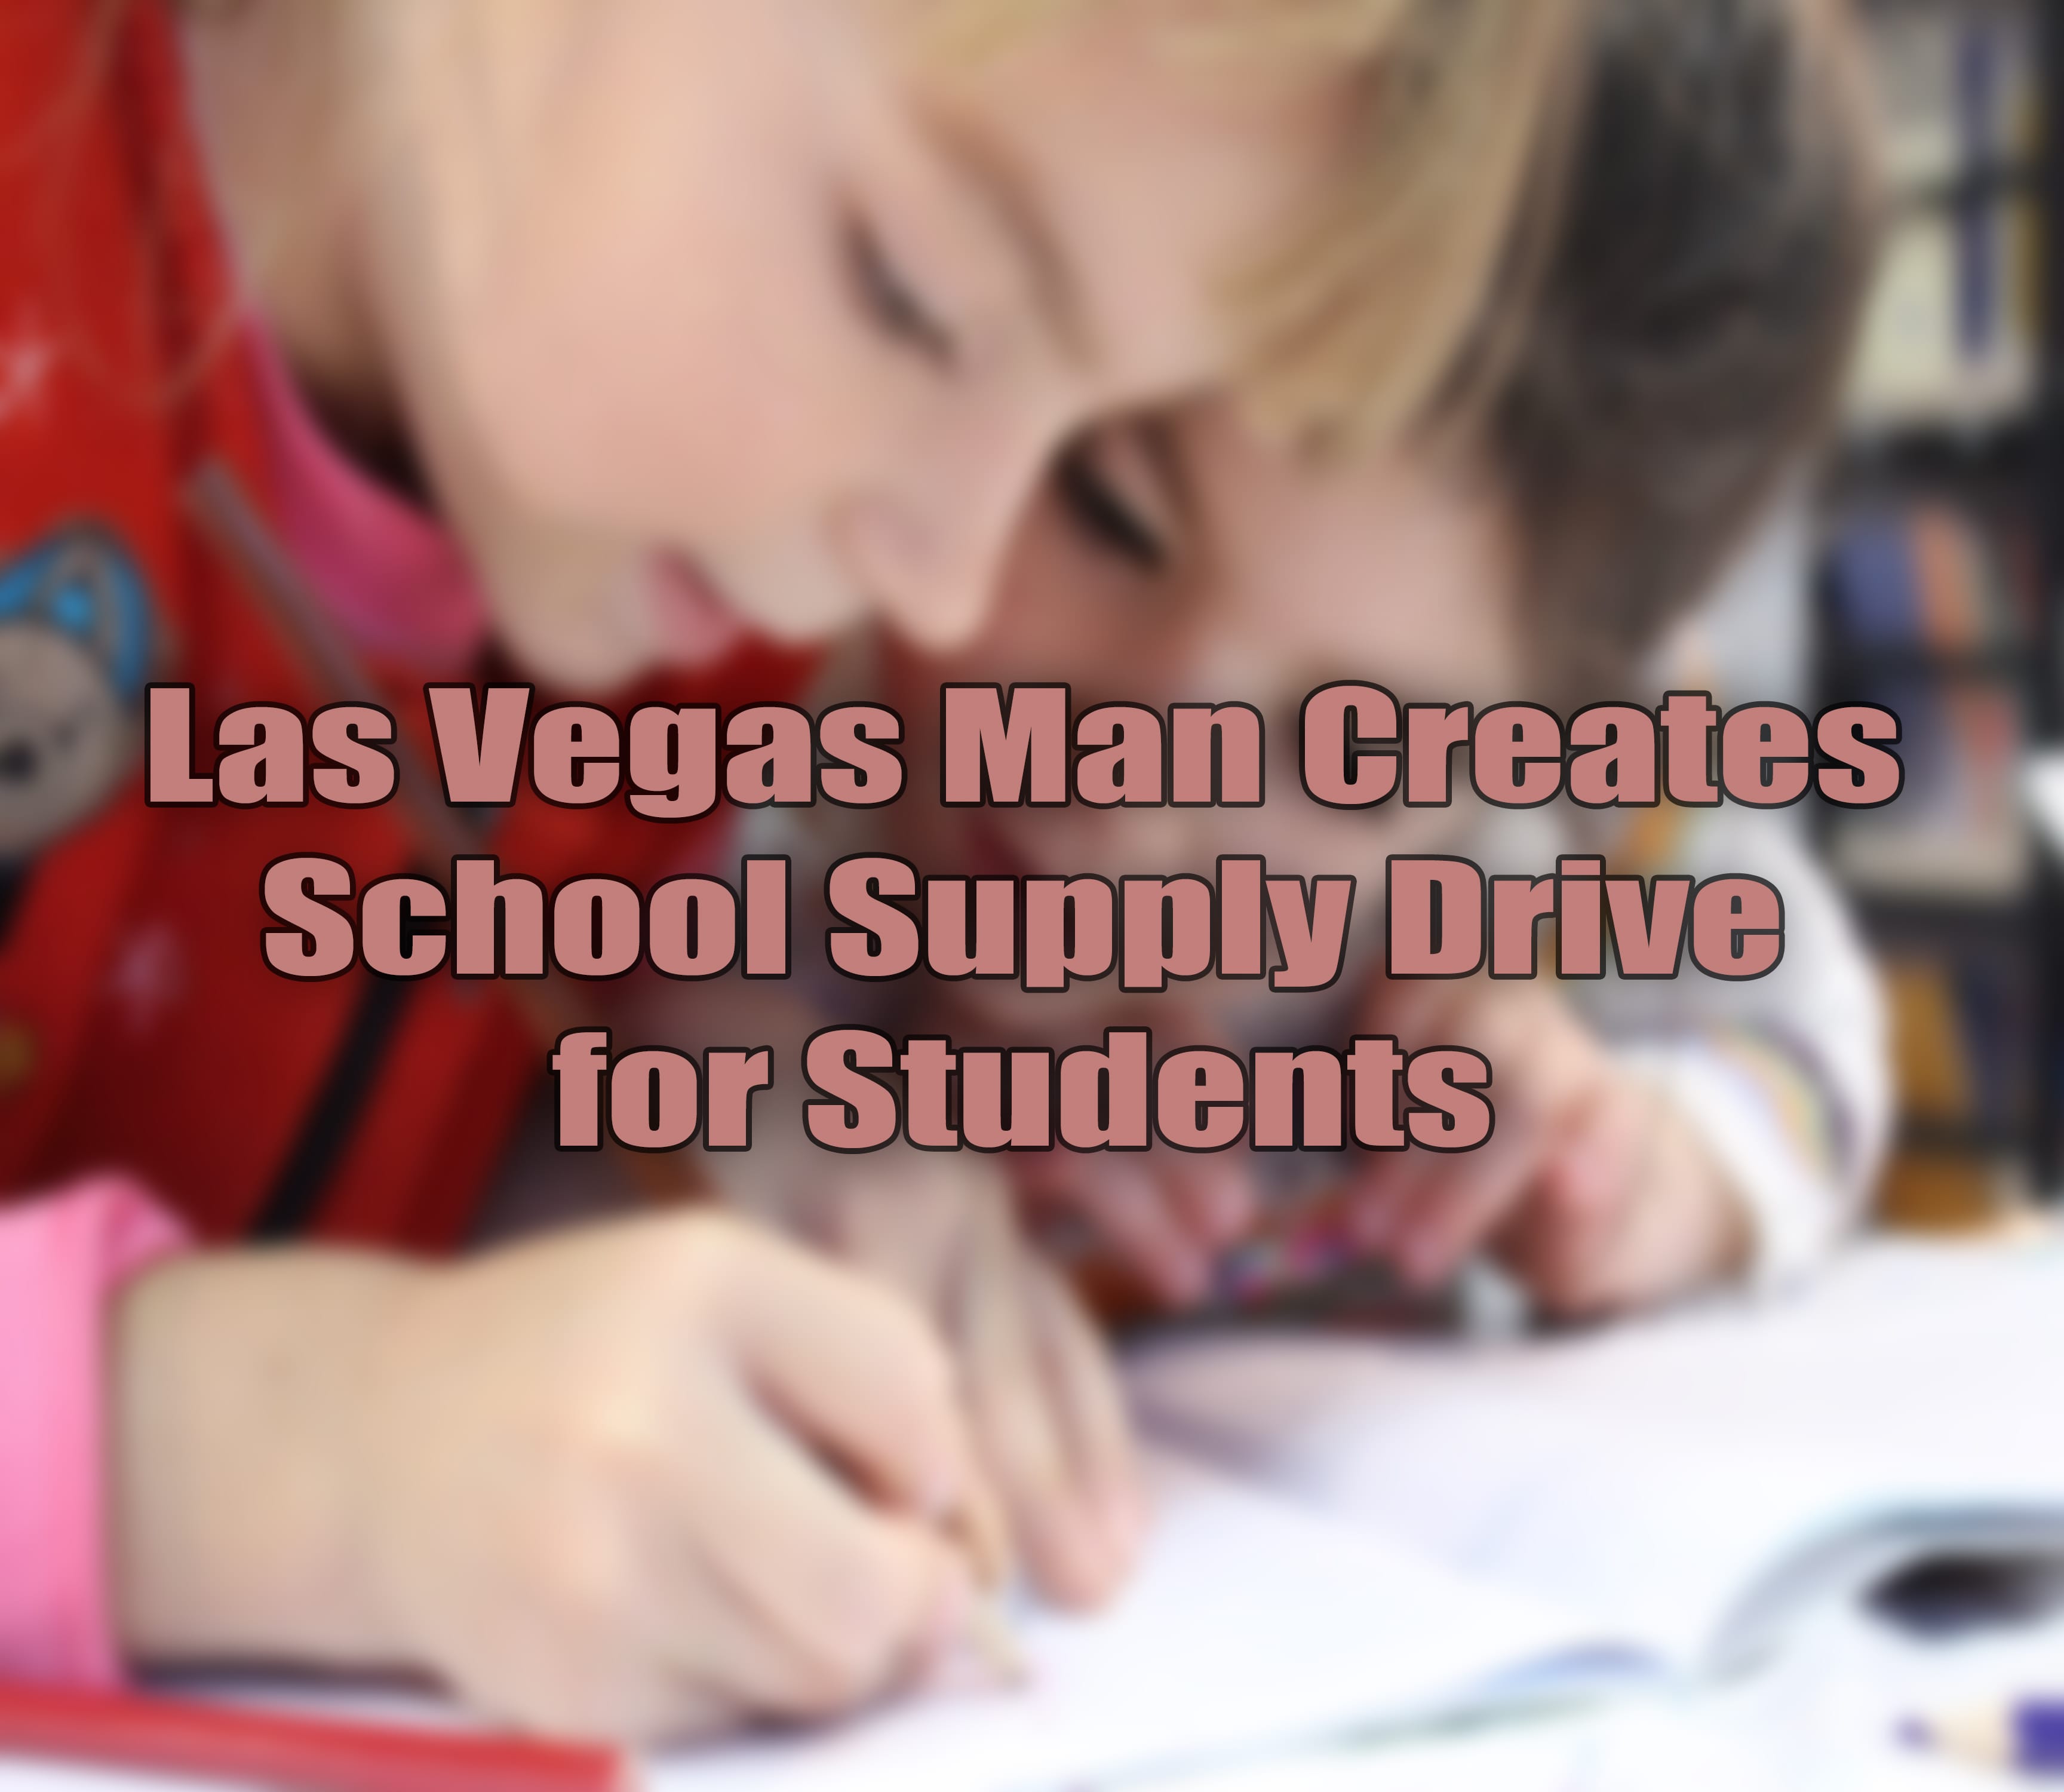 School Supply Drive in Las Vegas.jpg